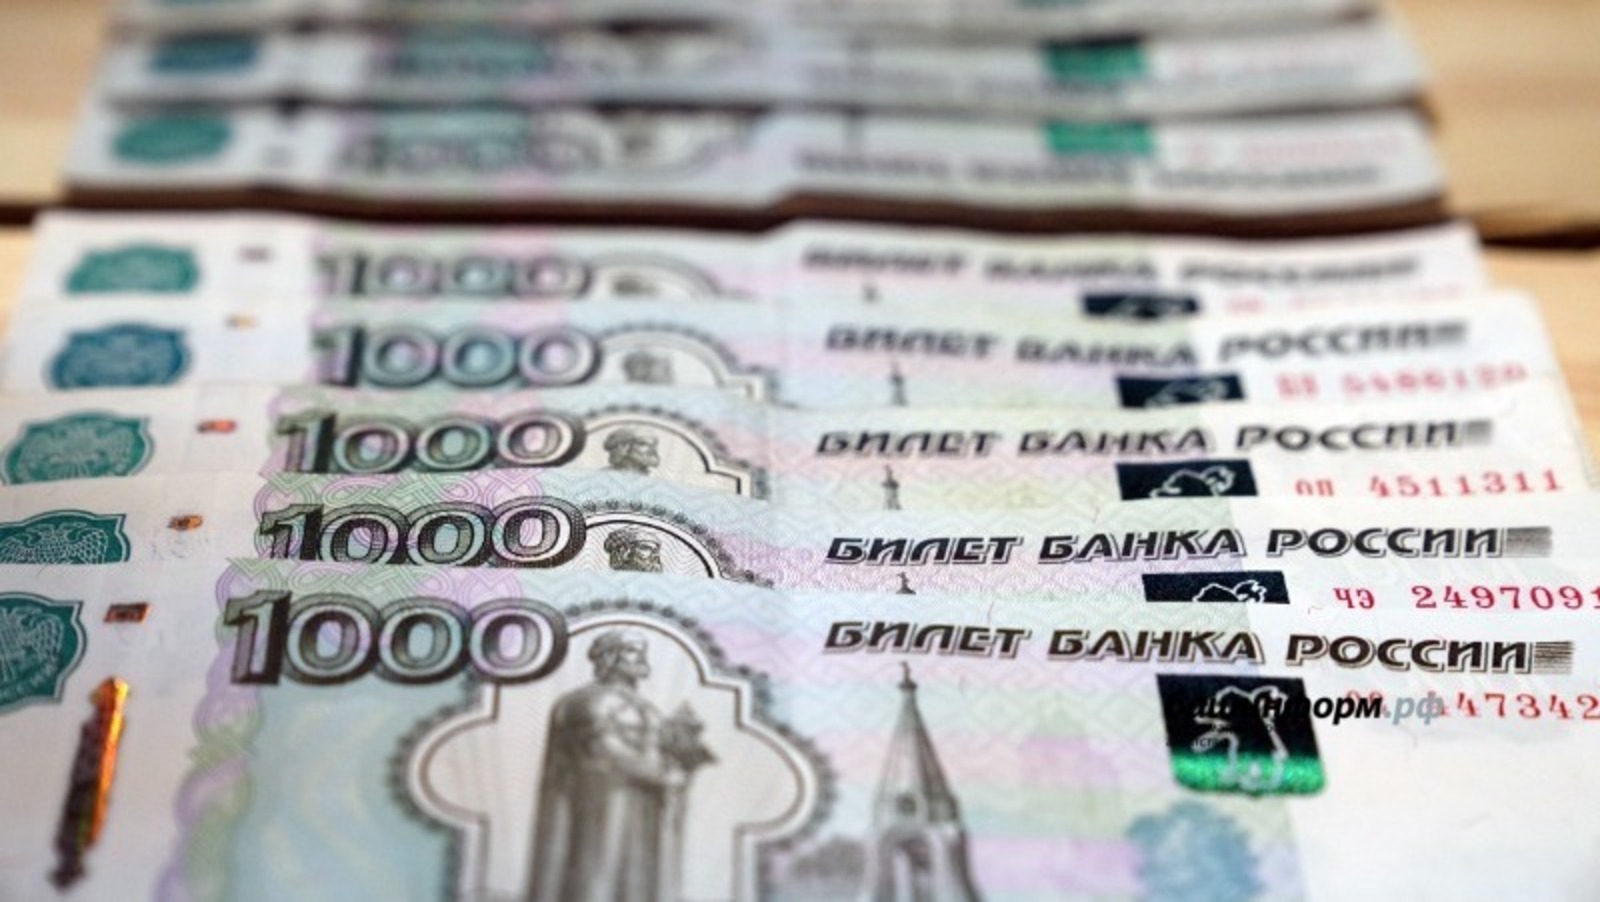 В Башкирии возбуждено уголовное дело по факту мошенничества при реализации нацпроекта